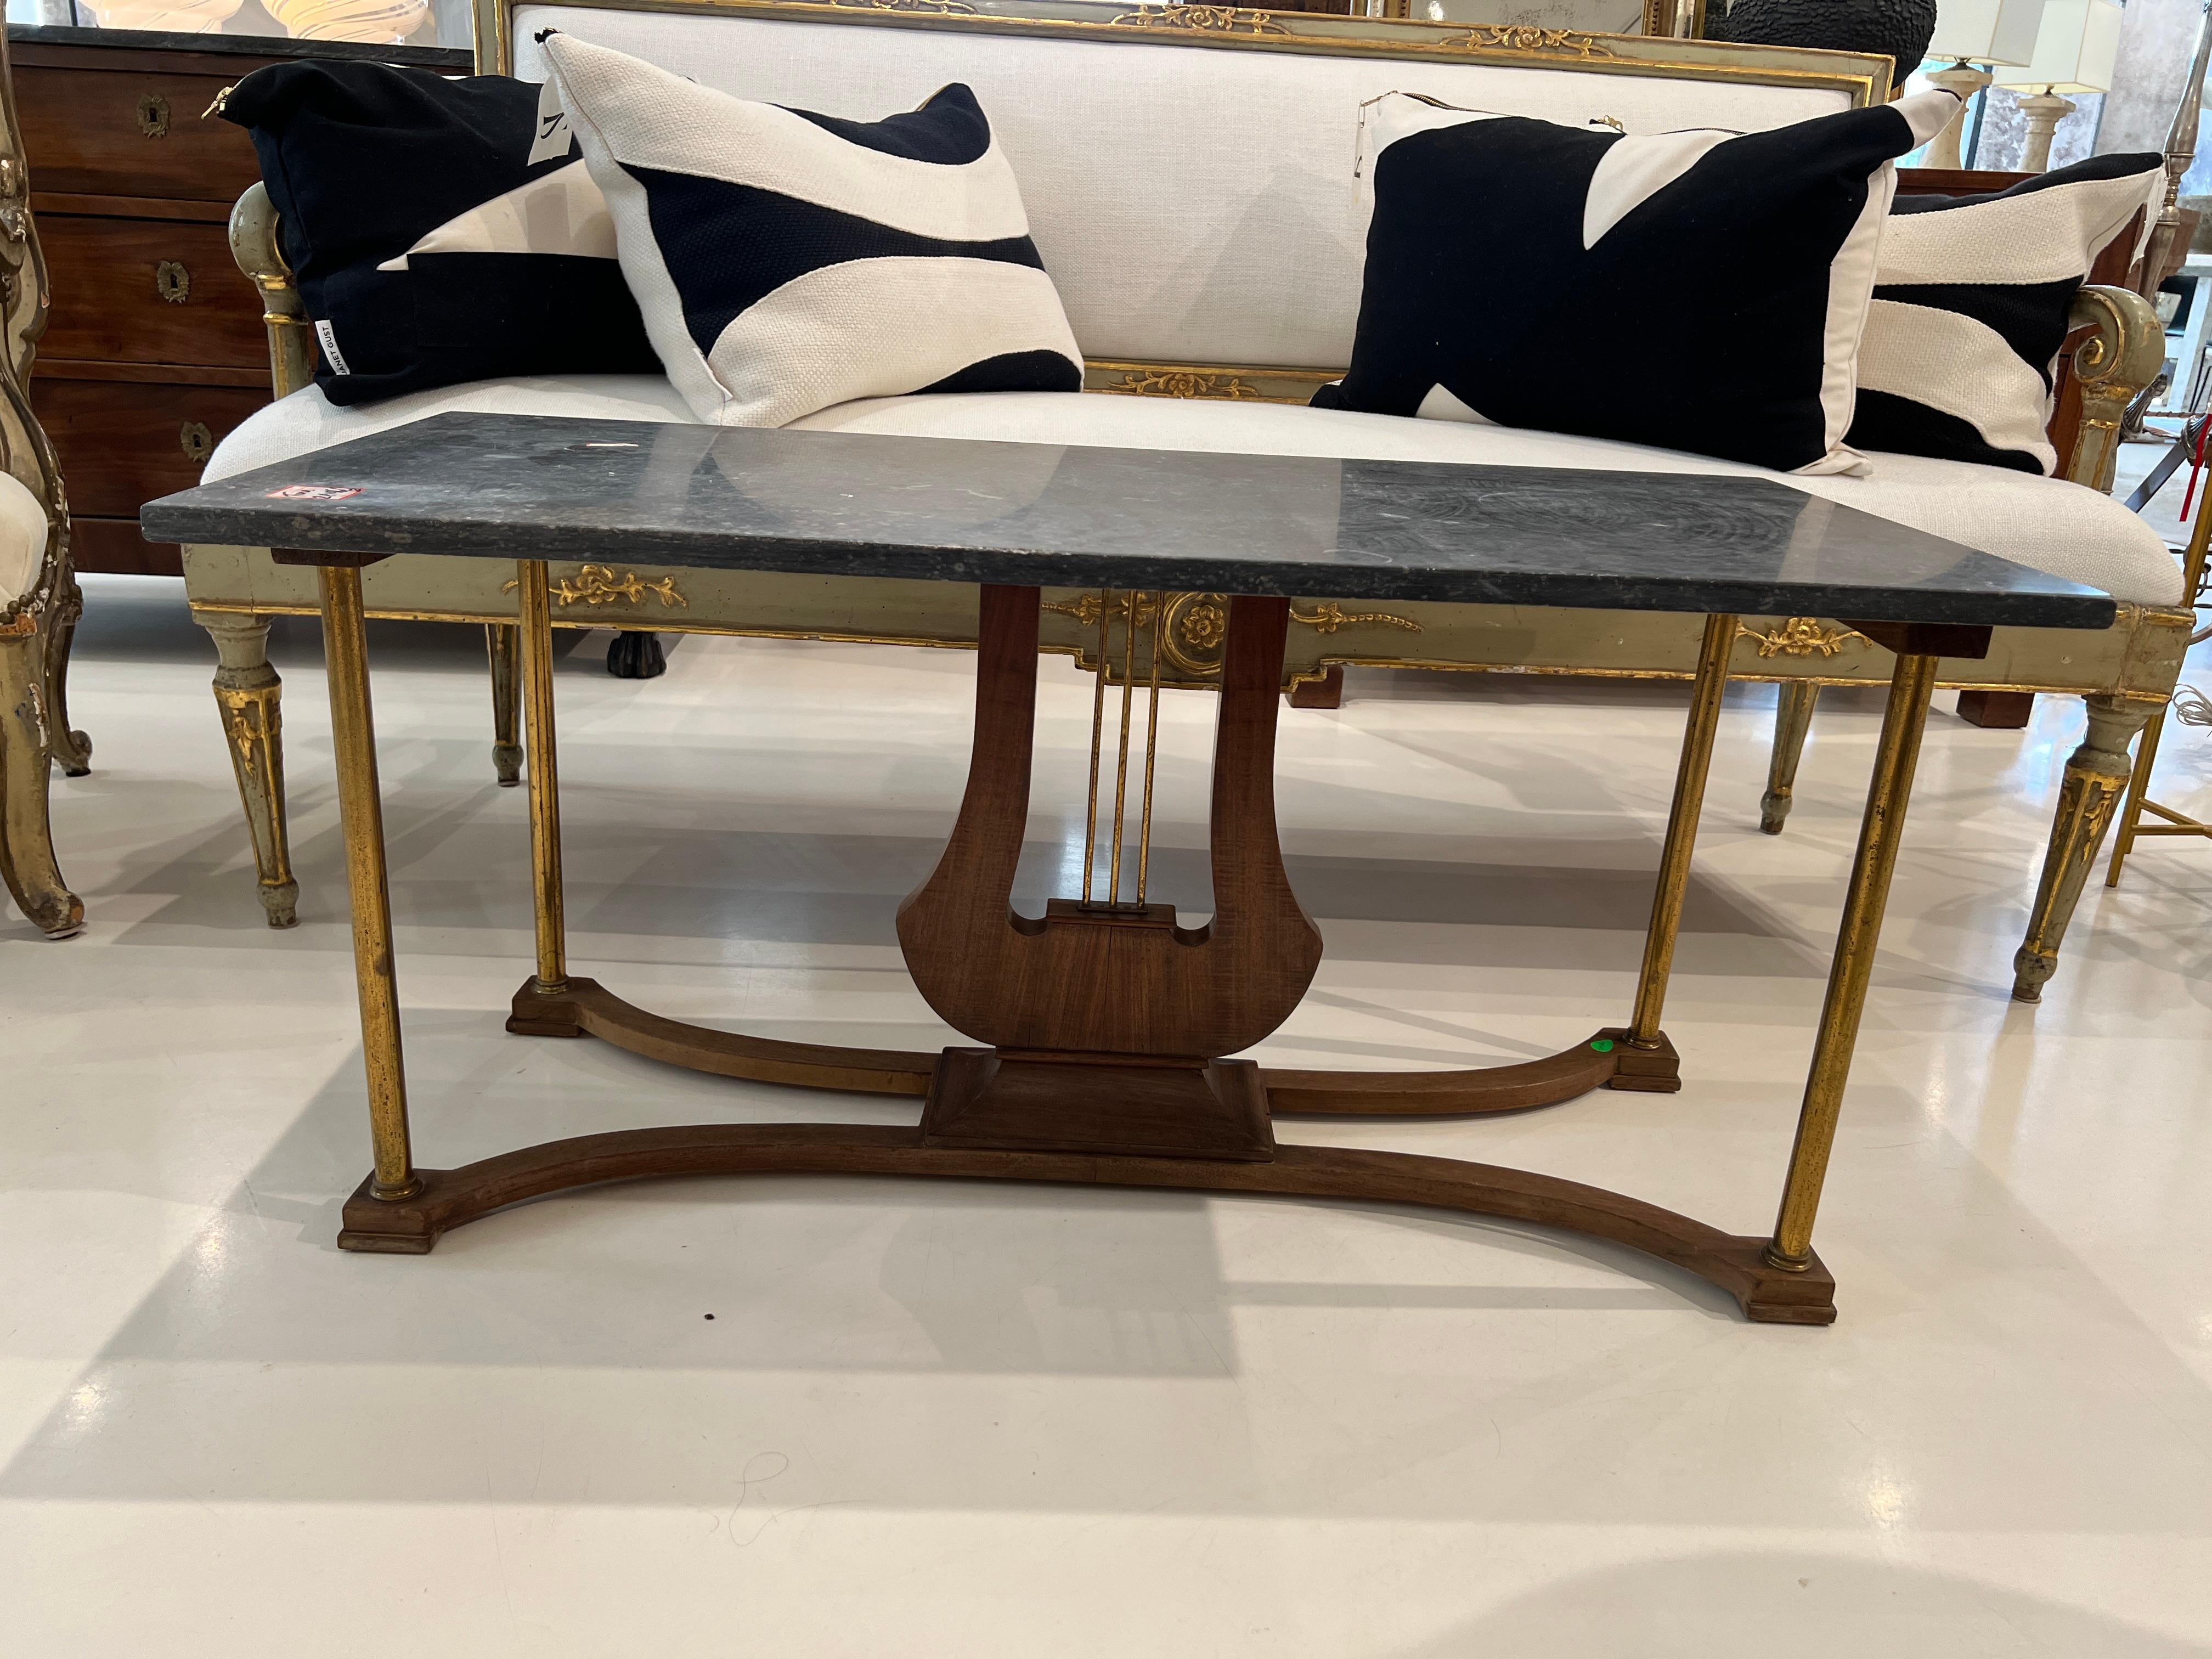 Le plateau en marbre foncé est soutenu par une base en forme de lyre et des pieds en laiton. Cette table basse française vintage fera un bel ajout à n'importe quel coin salon. 